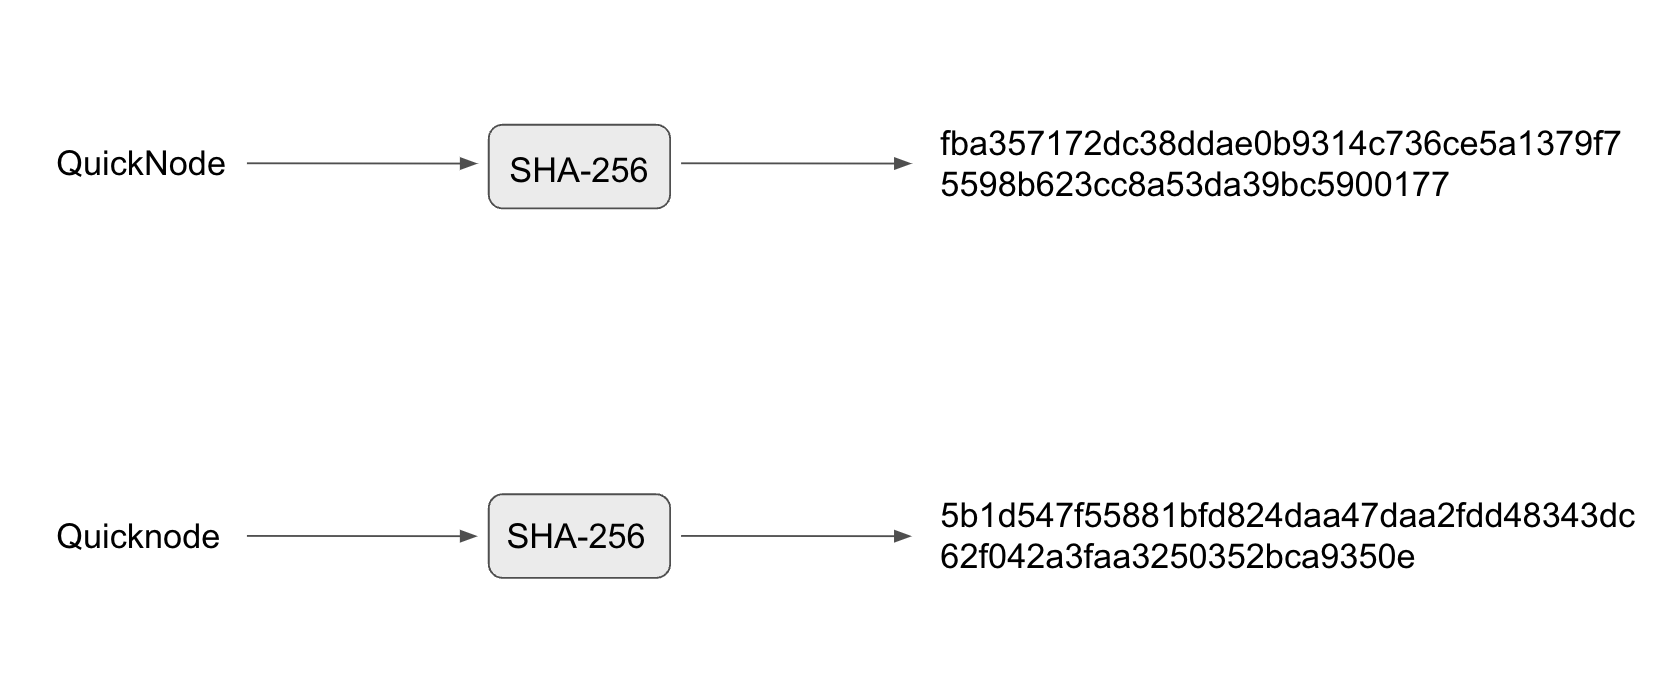 Image showing SHA-256 encryption